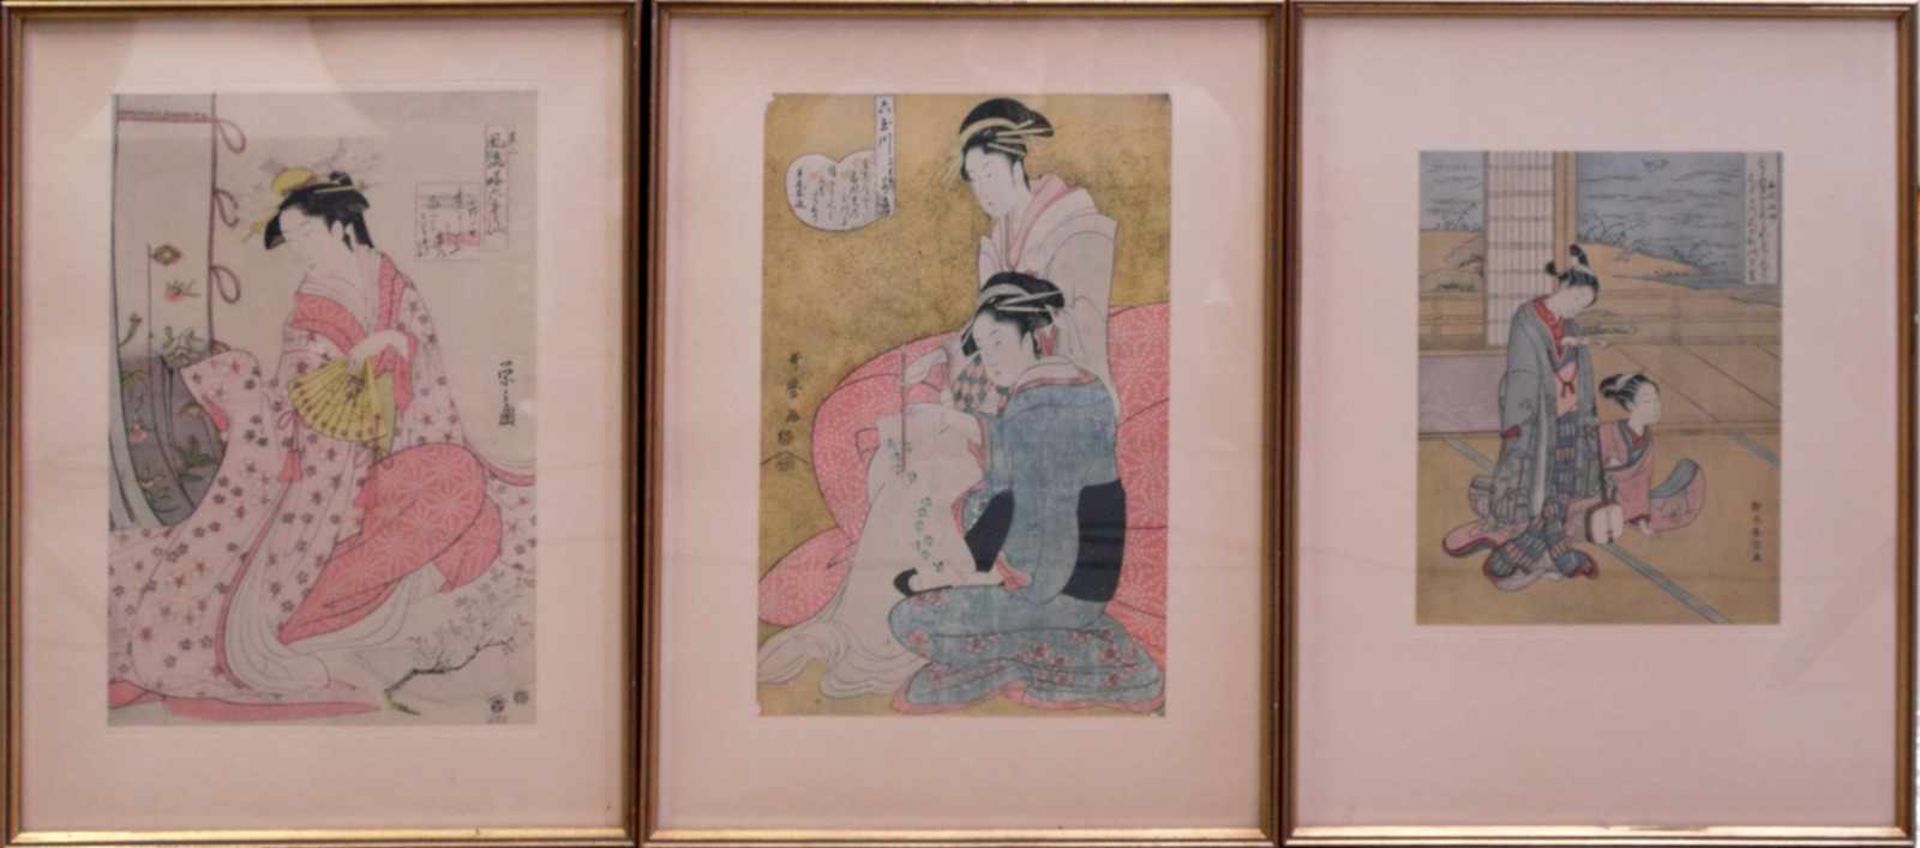 3 japanische ukiyo-e Holzdrucke 19. Jhd.Interieurdarstellungen mit jungen Mädchen beim Zeitvertreib.